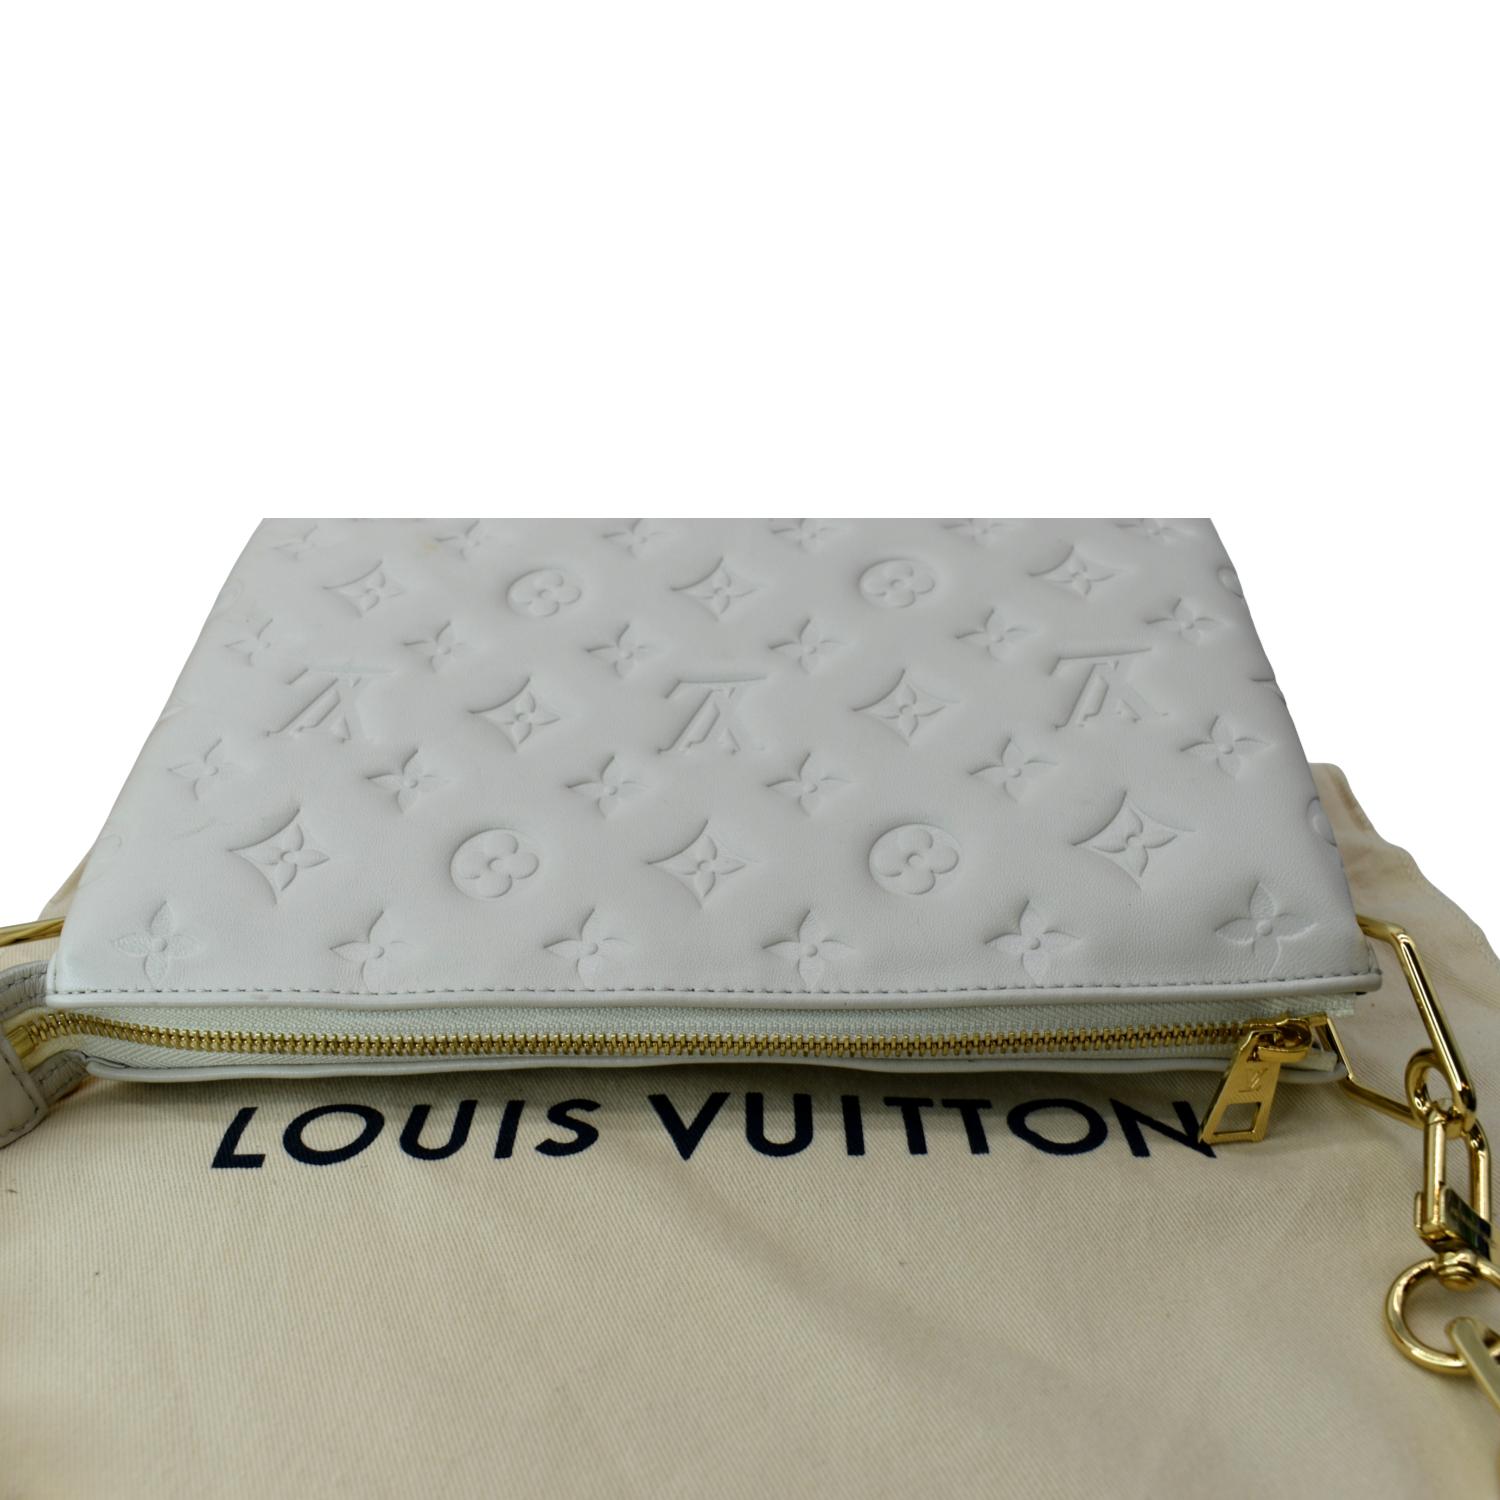 Louis Vuitton Coussin PM — LSC INC